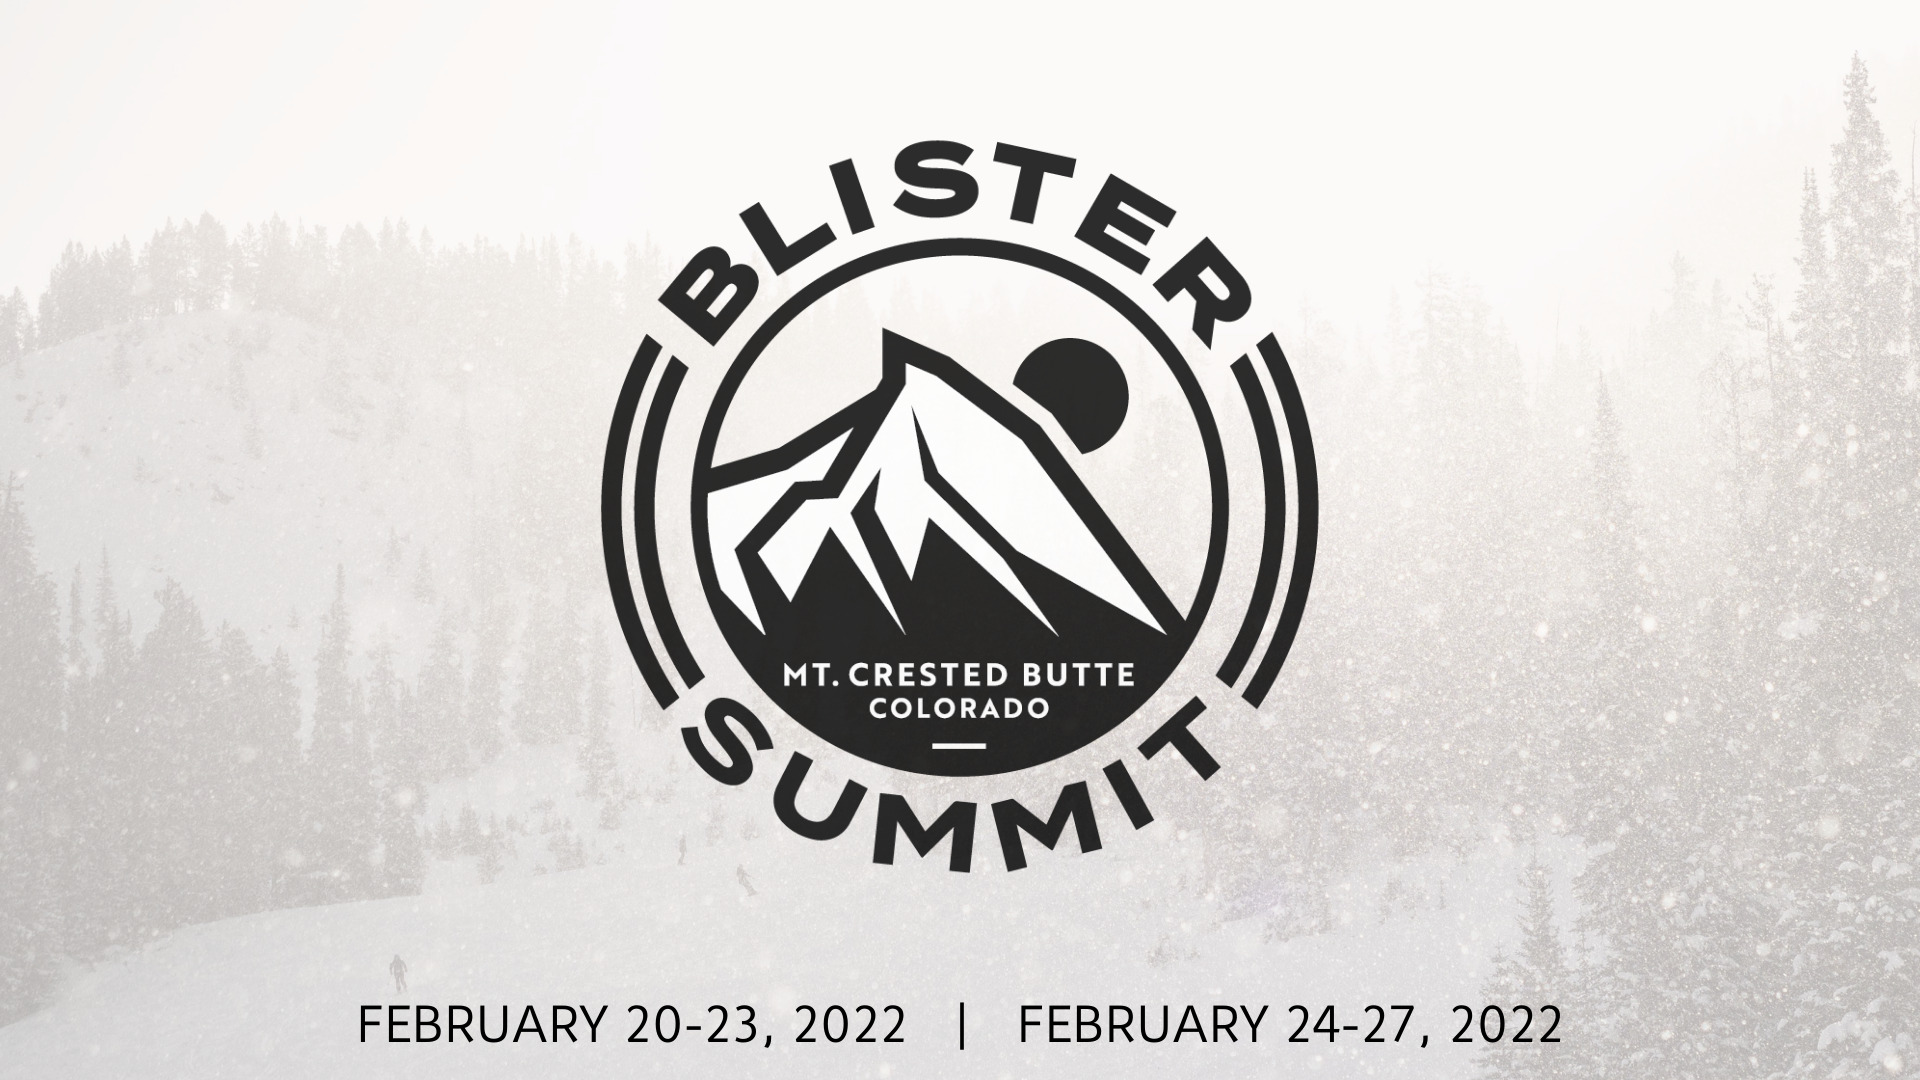 Blister Summit 2022